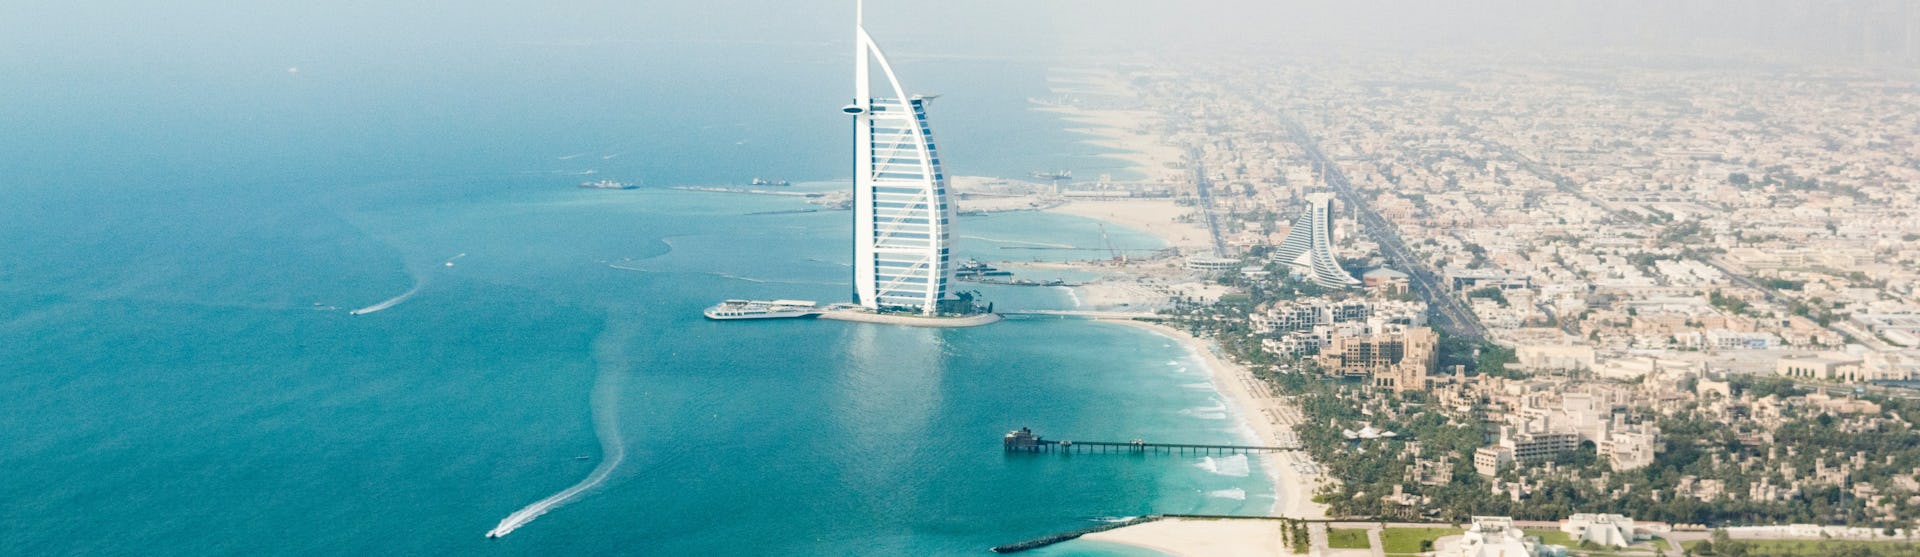 Överblicks bild över Dubais hamn med byggnader stränder och klarblått vatten.